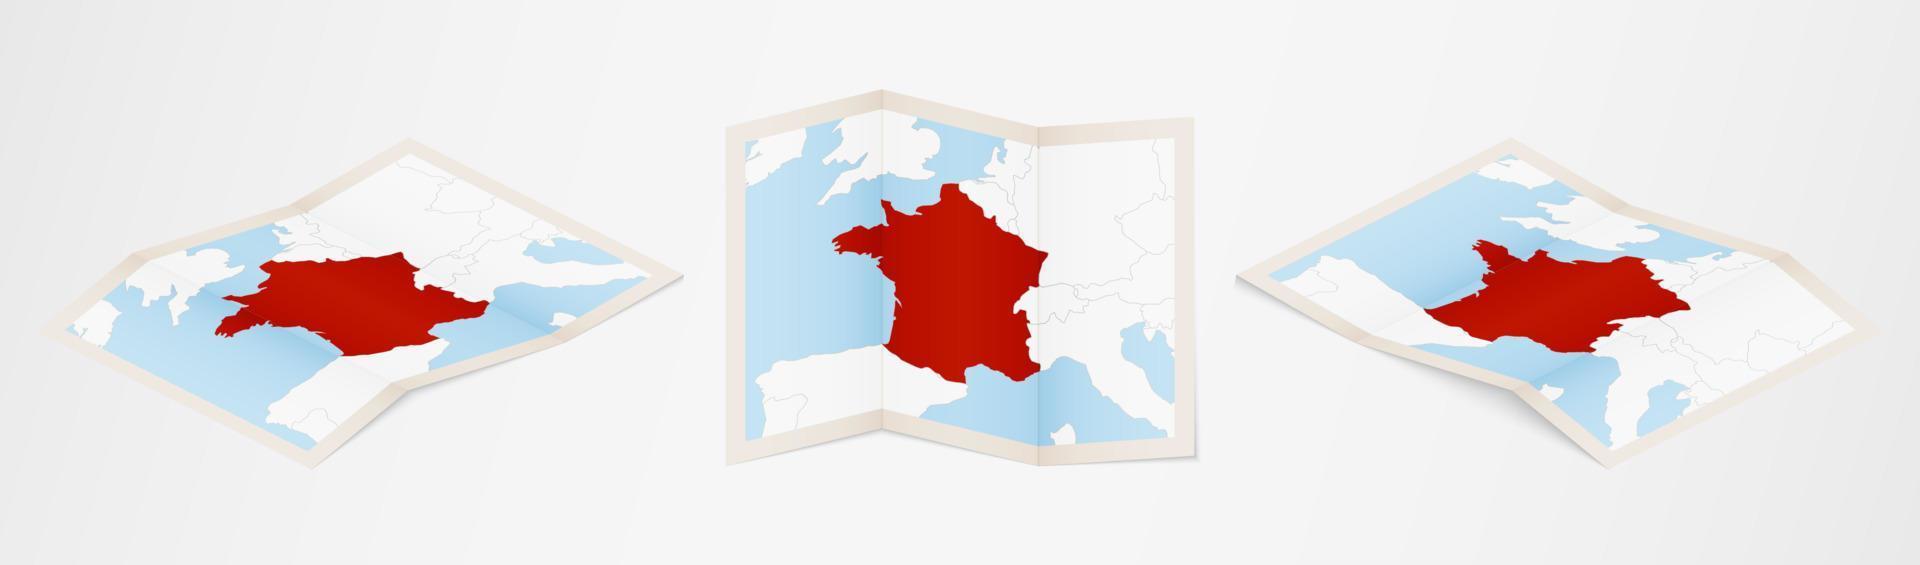 gevouwen kaart van Frankrijk in drie verschillend versies. vector